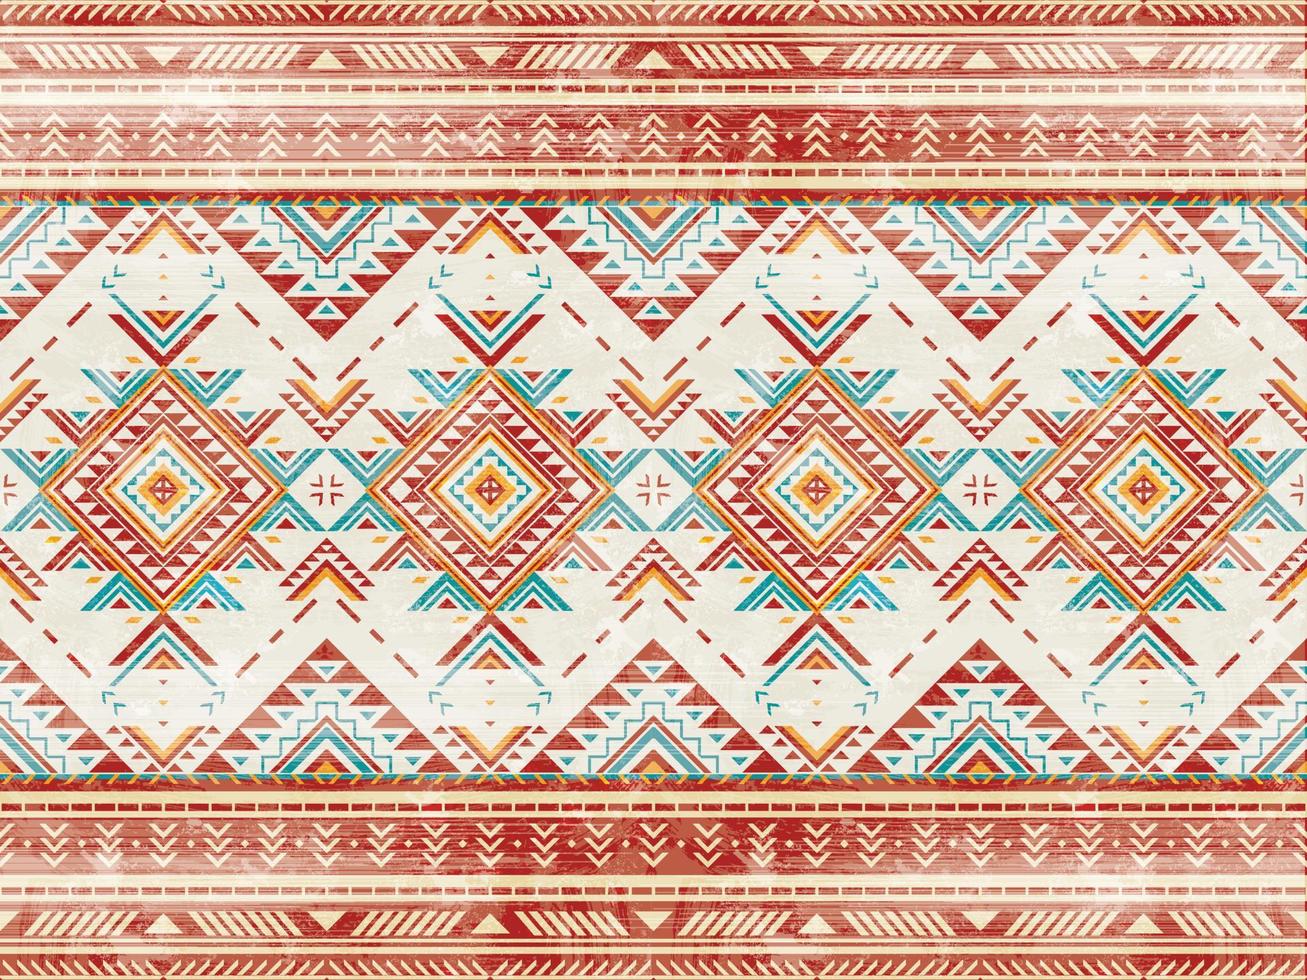 Muster der amerikanischen Ureinwohner indisches Ornamentmuster geometrische ethnische Textilstruktur Stammes- Aztekenmuster Navajo mexikanischer Stoff nahtlose Vektordekoration vektor